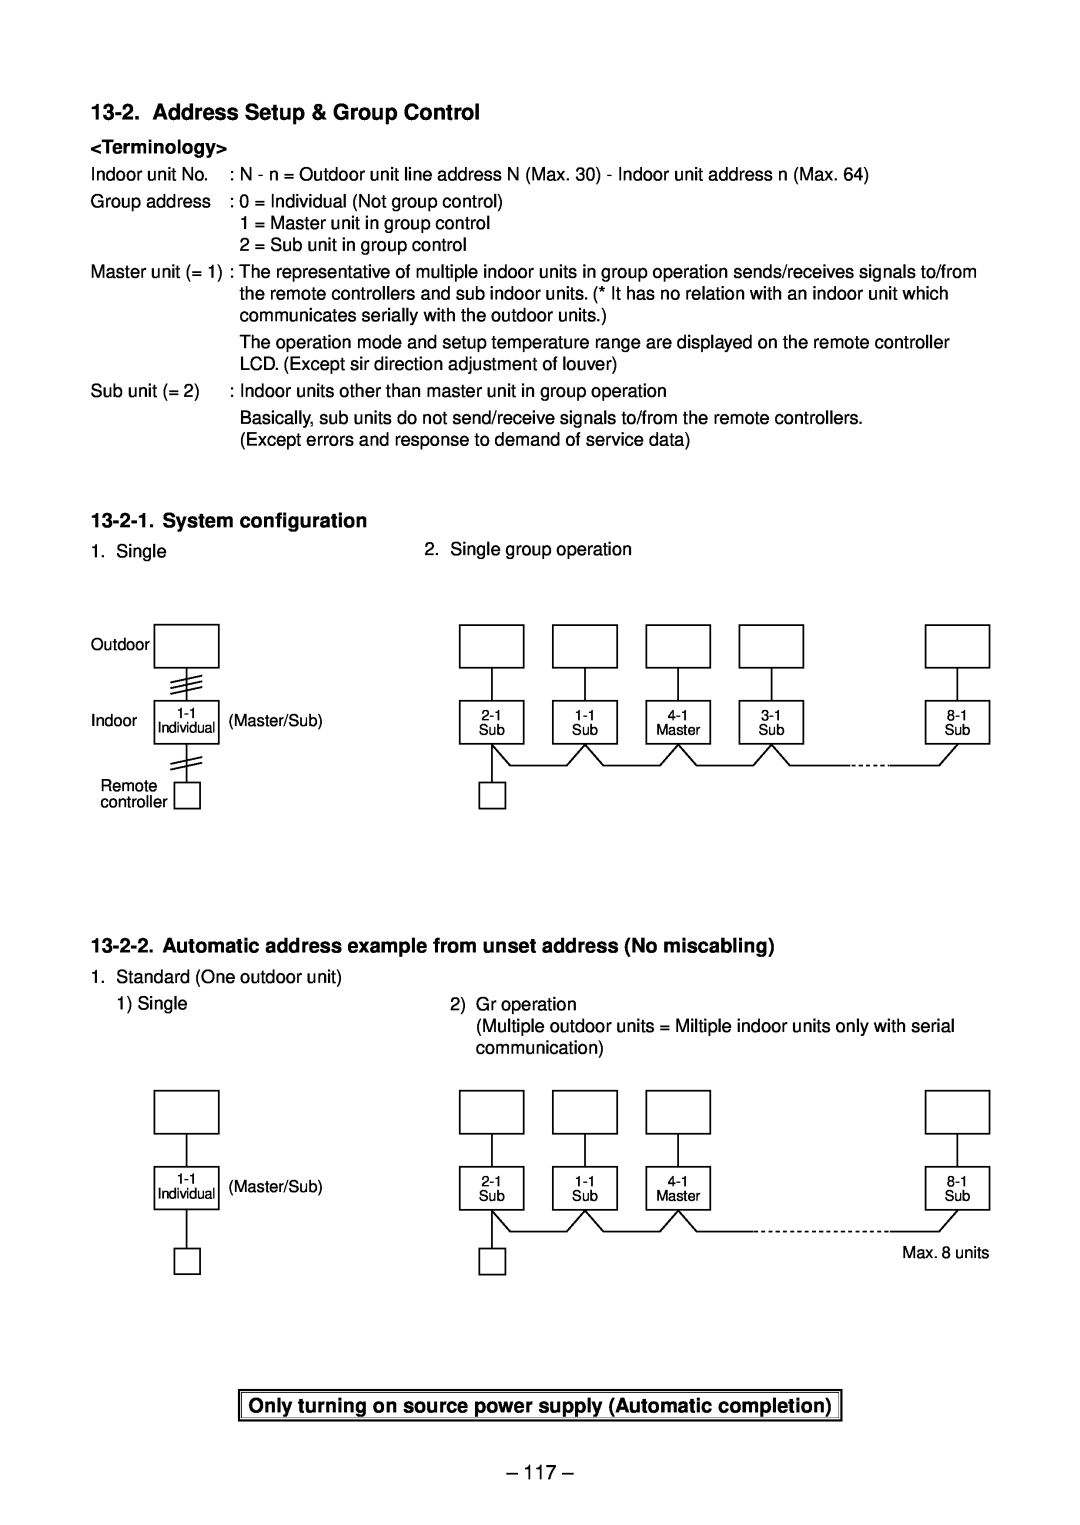 Toshiba RAV-SM1402BT-E, RAV-SM1102CT-E, RAV-SM1102BT-E, RAV-SM1403UT-E Address Setup & Group Control, System configuration 